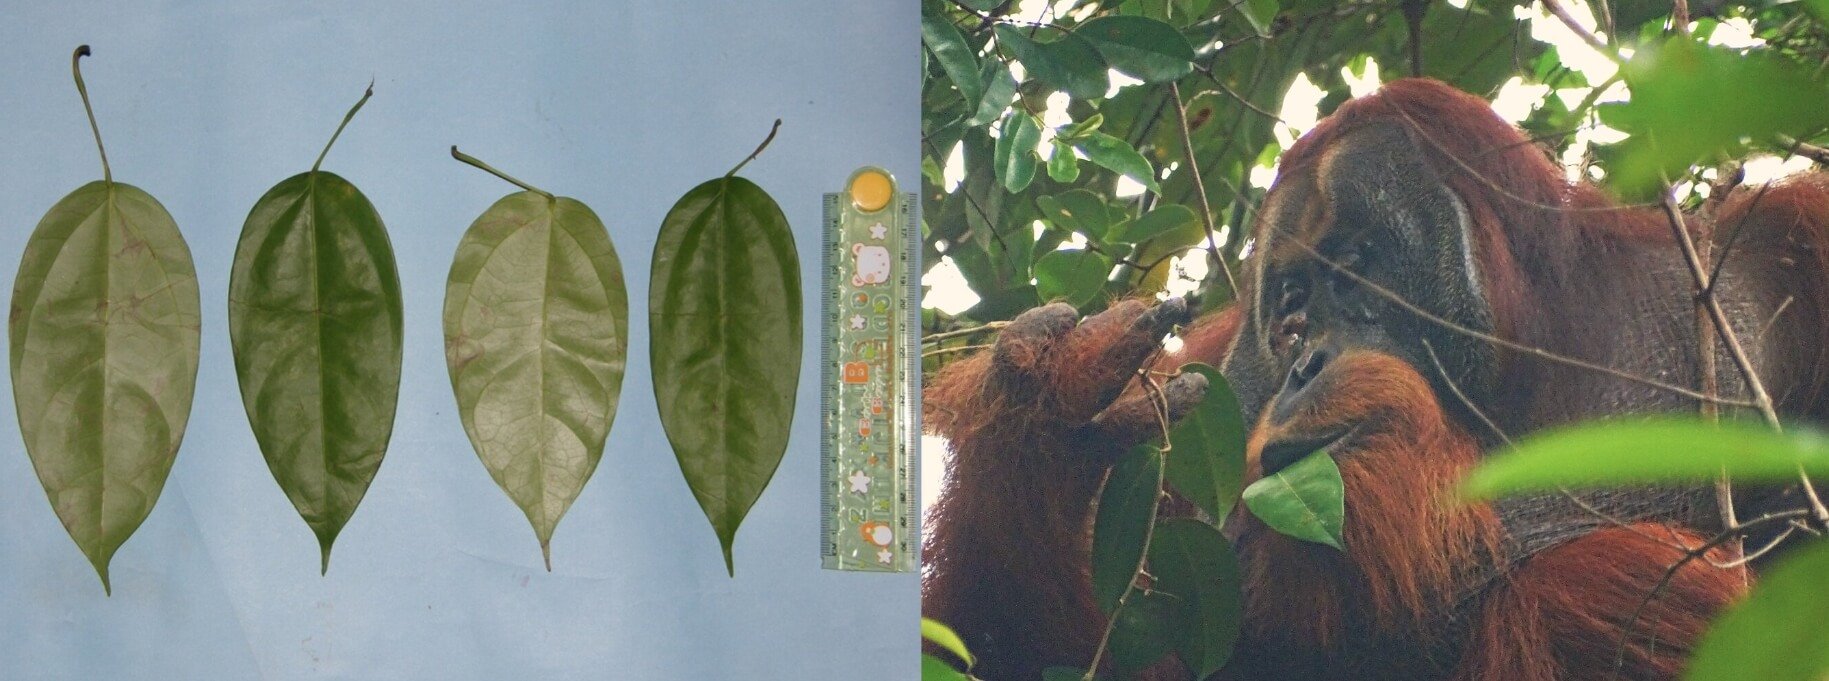 Лекарственное растение от ран. Листья лианы Fibraurea tinctoria и орангутан Ракус. Источник изображения: phys.org. Фото.